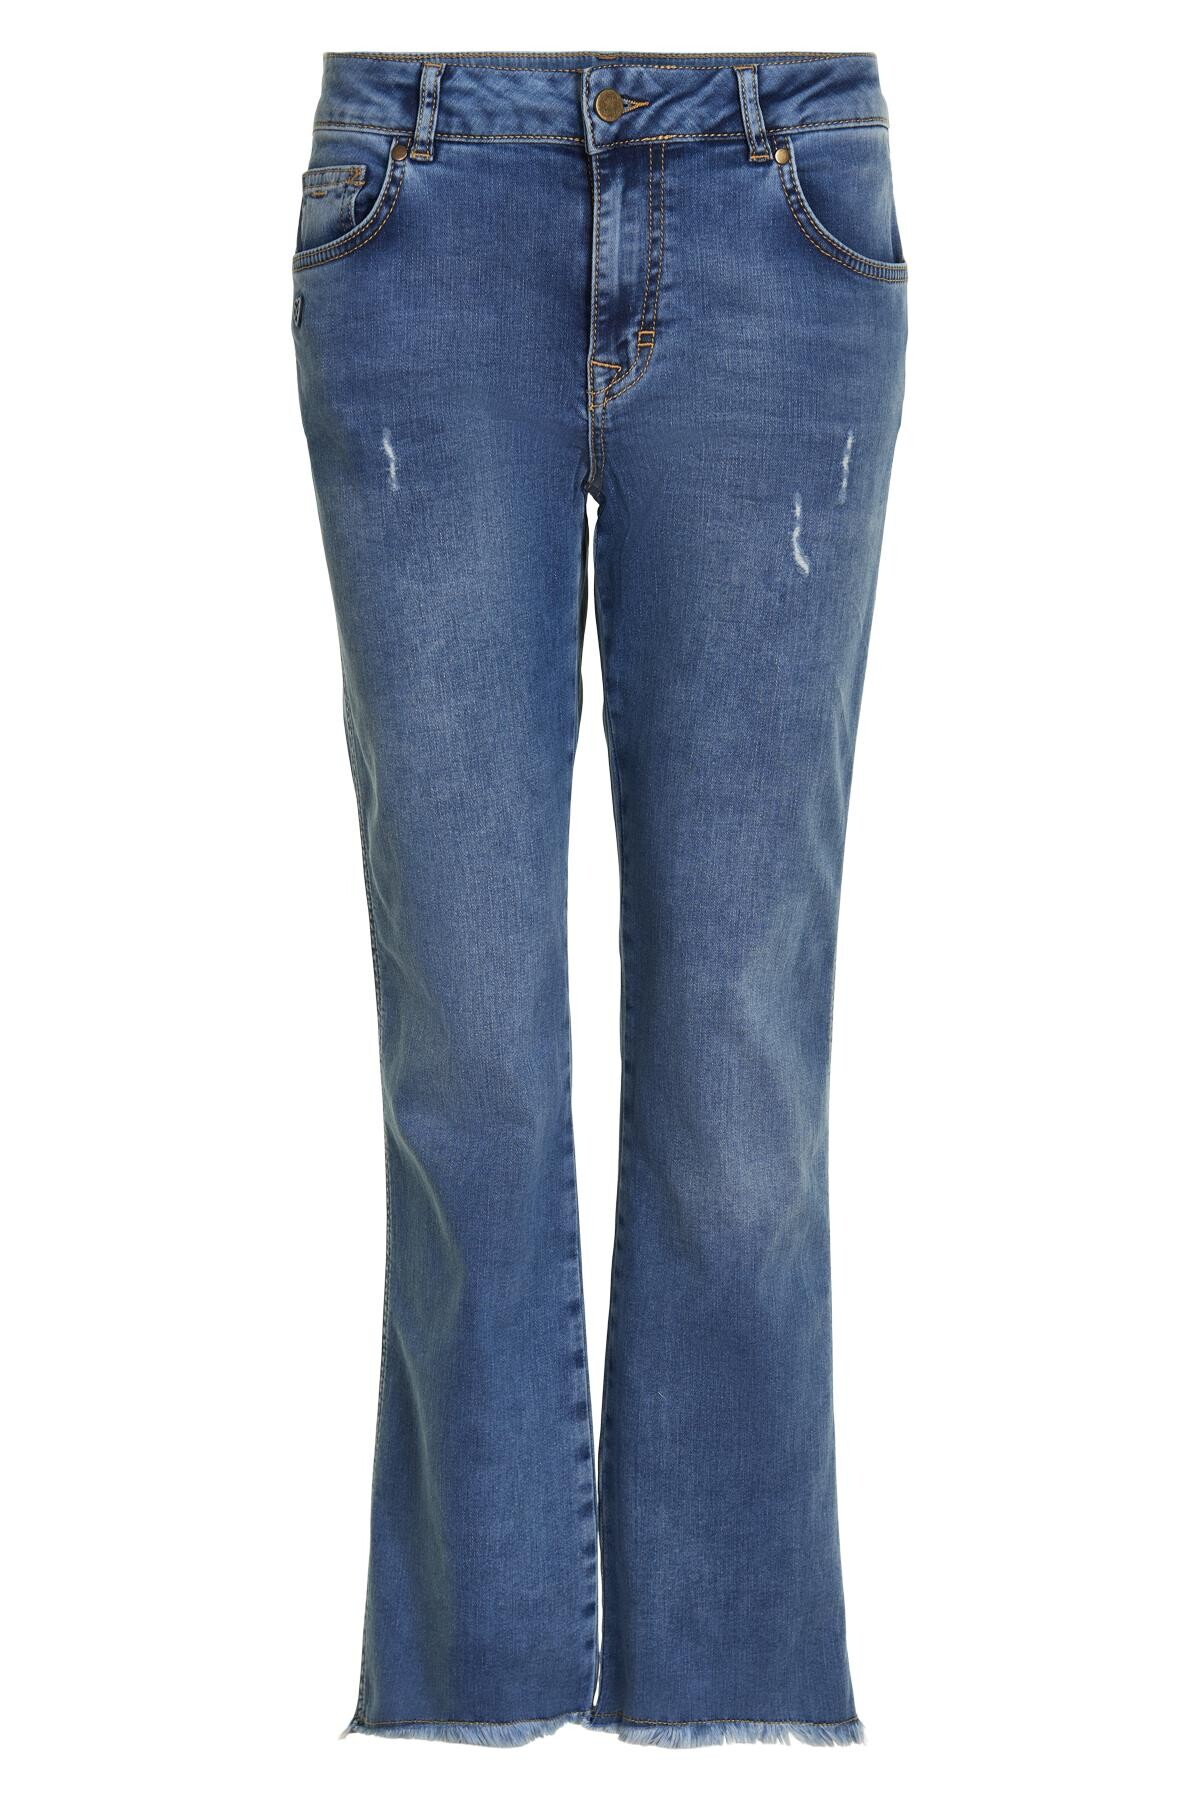 In Front Stella Jeans, Farve: Blå, Størrelse: 36, Dame